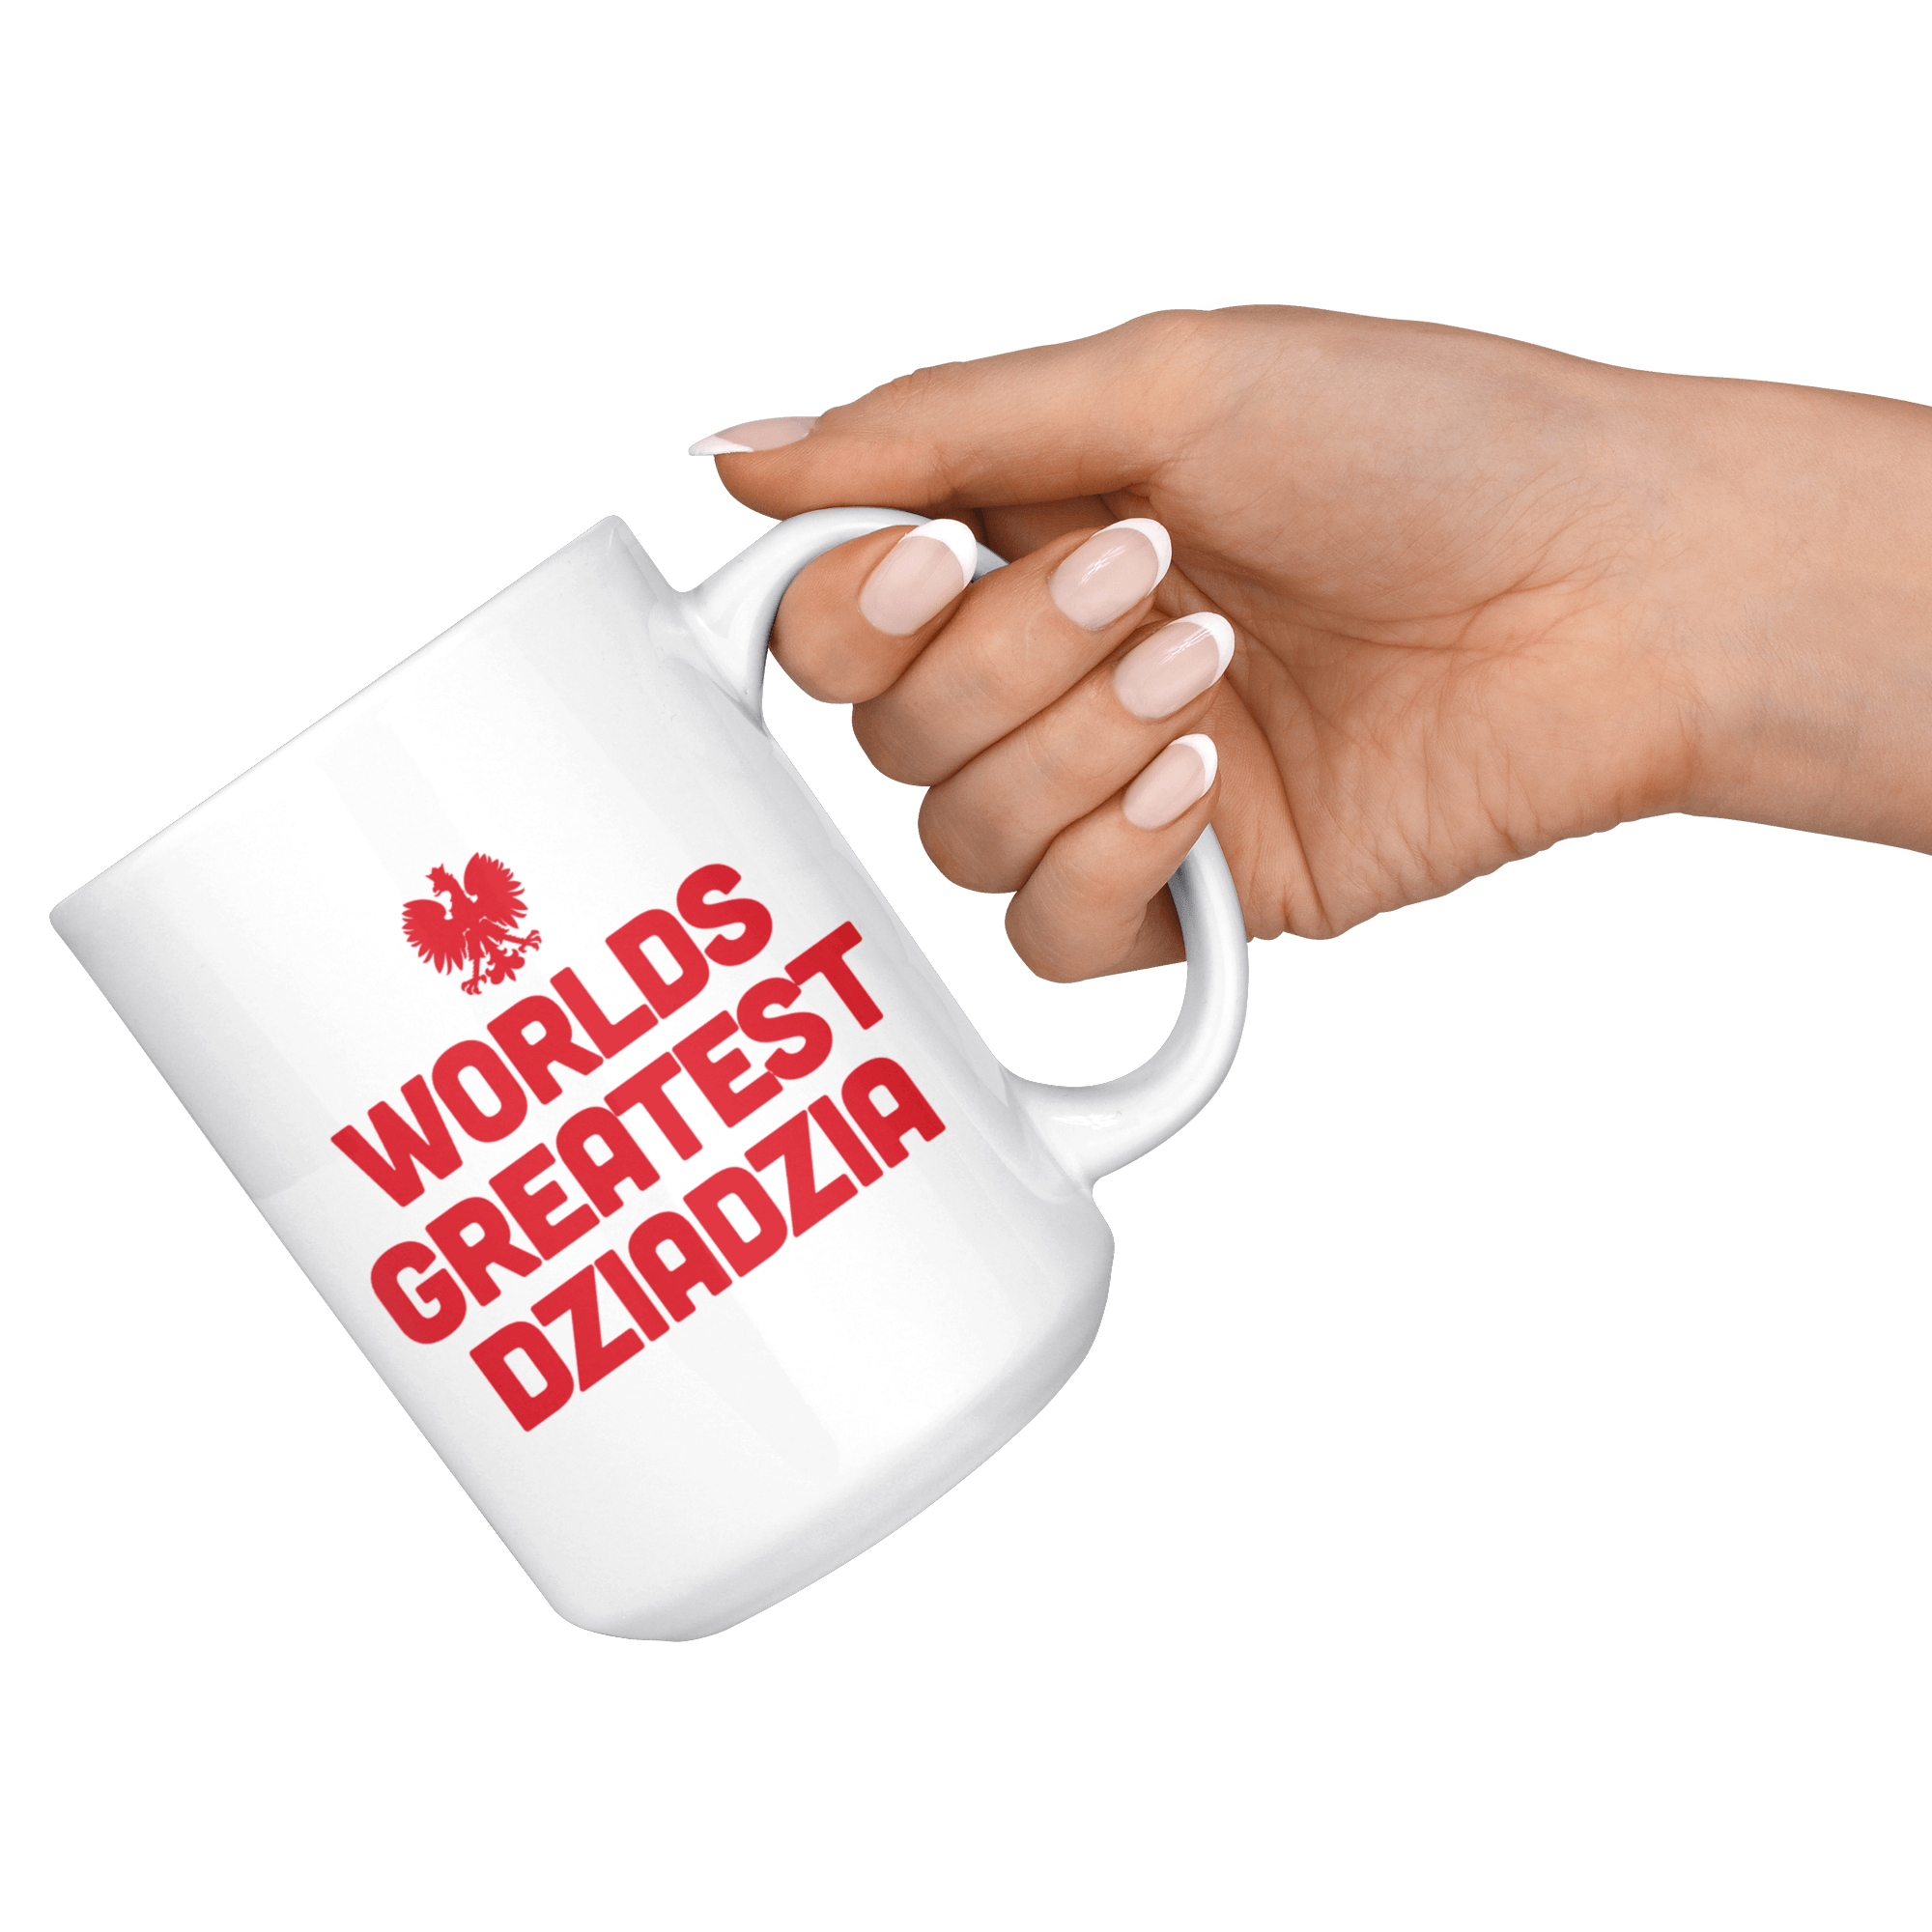 World's Greatest Dziadzia Coffee Mug Drinkware teelaunch   